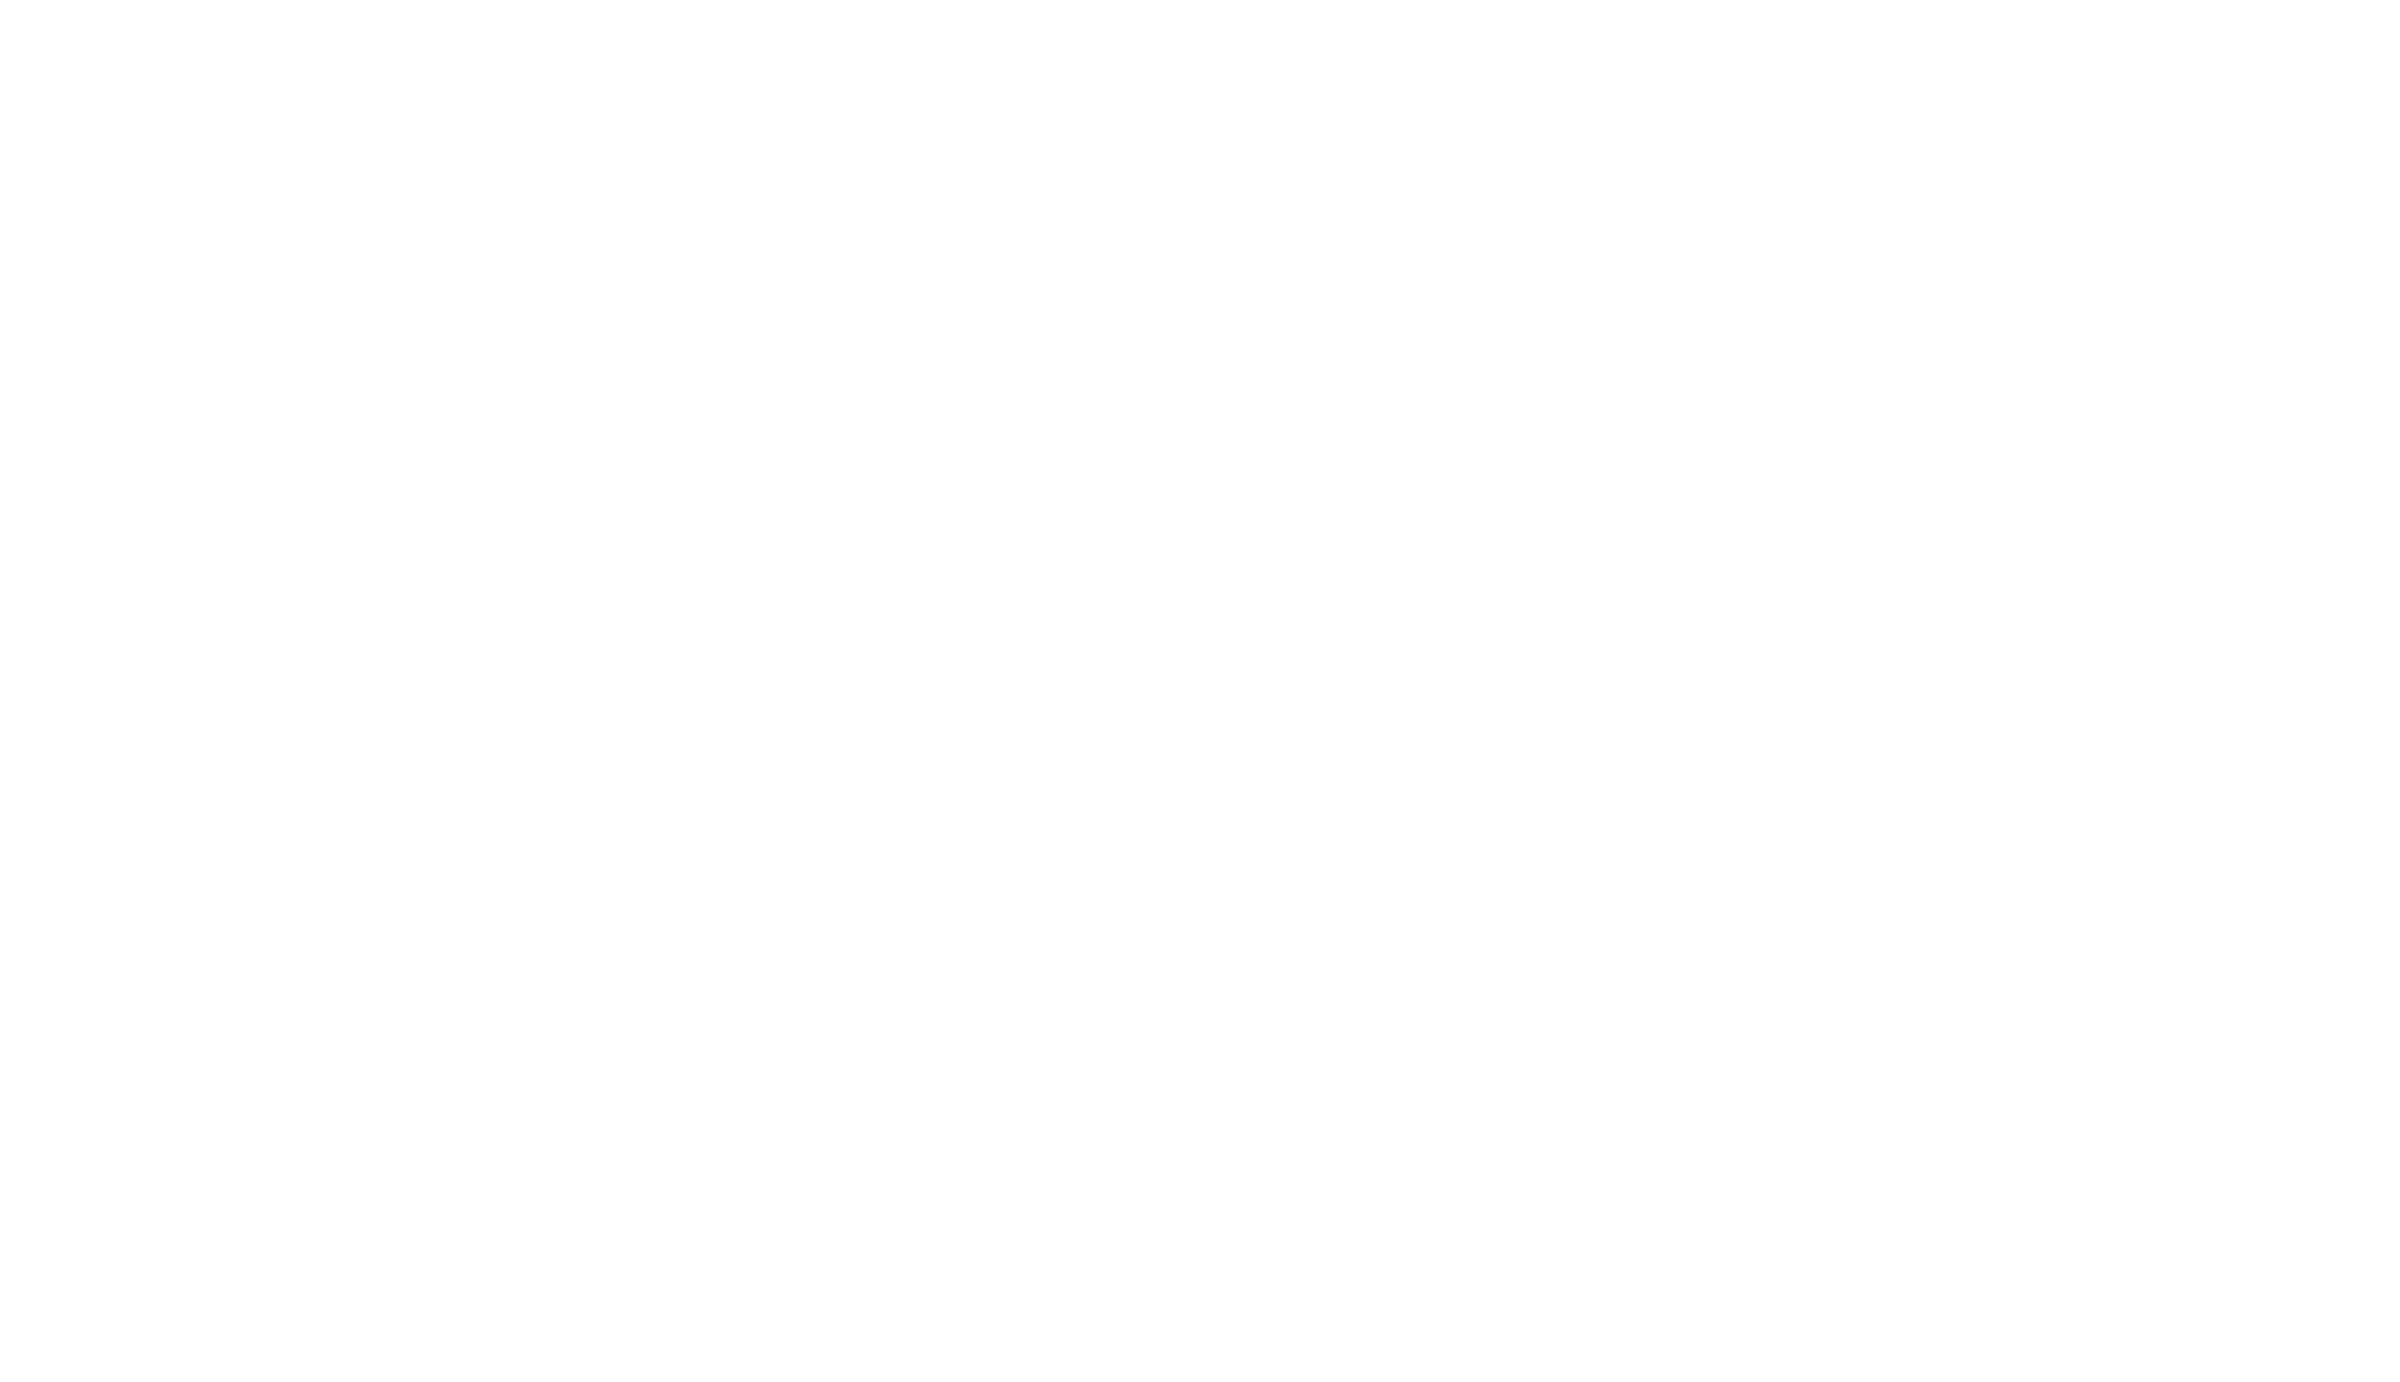 Meggaxp's Blood Bash - Semi-Finalist 2020